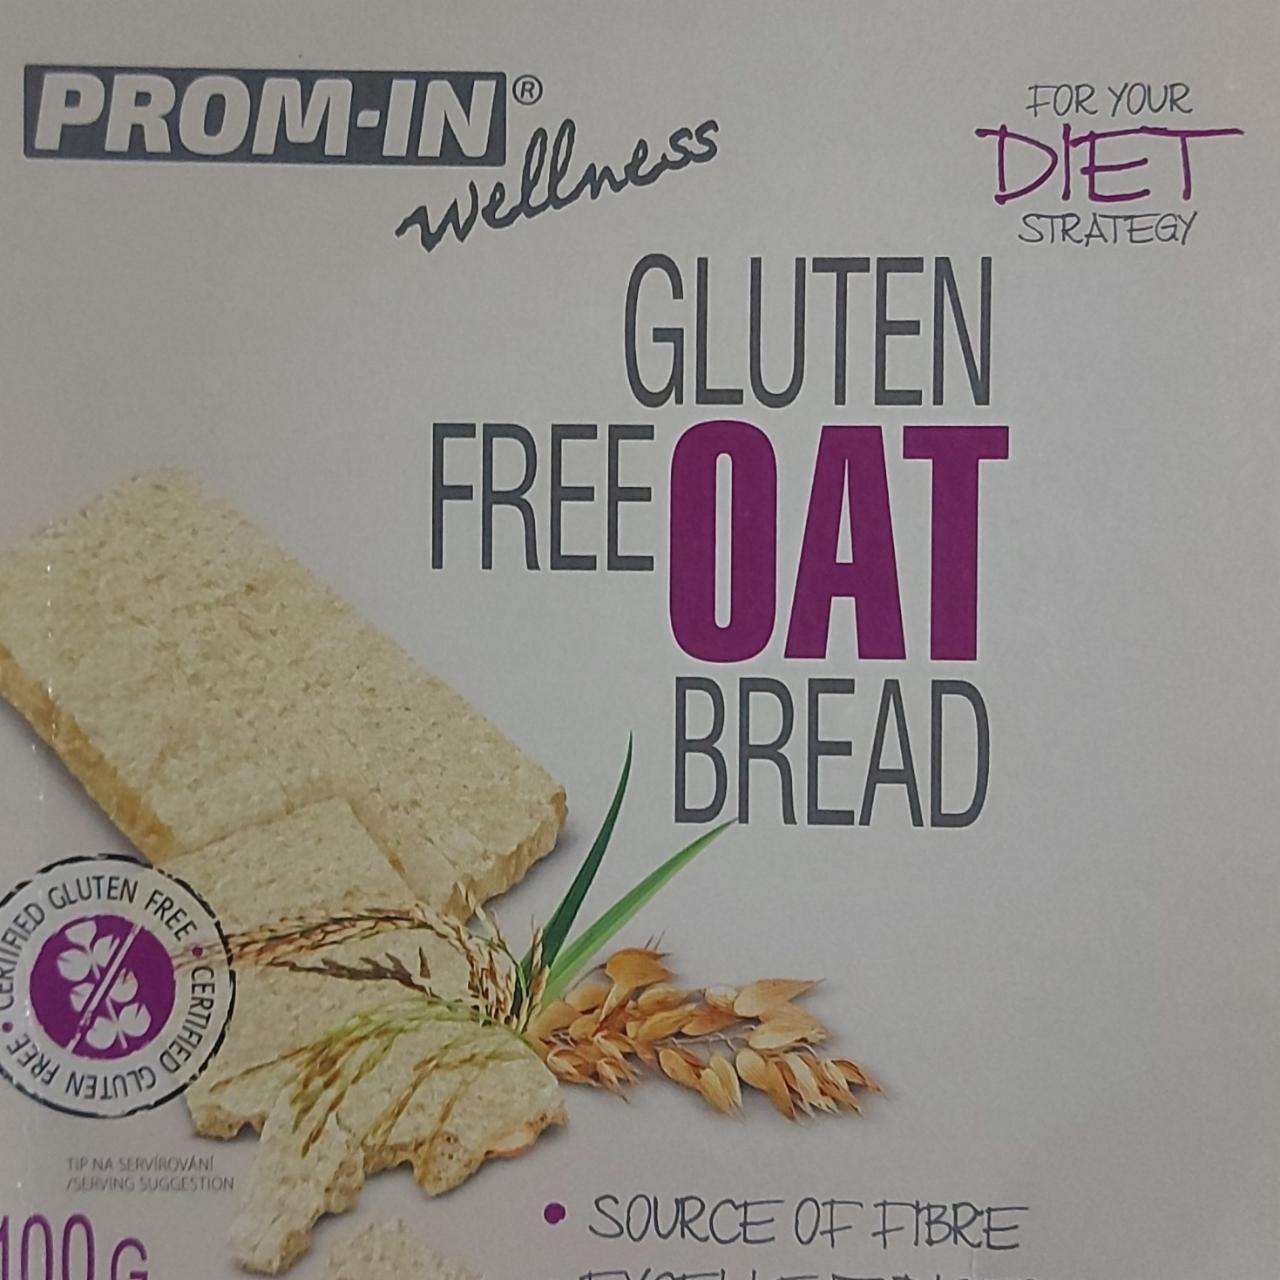 Fotografie - Wellness Gluten free OAT bread Prom-in